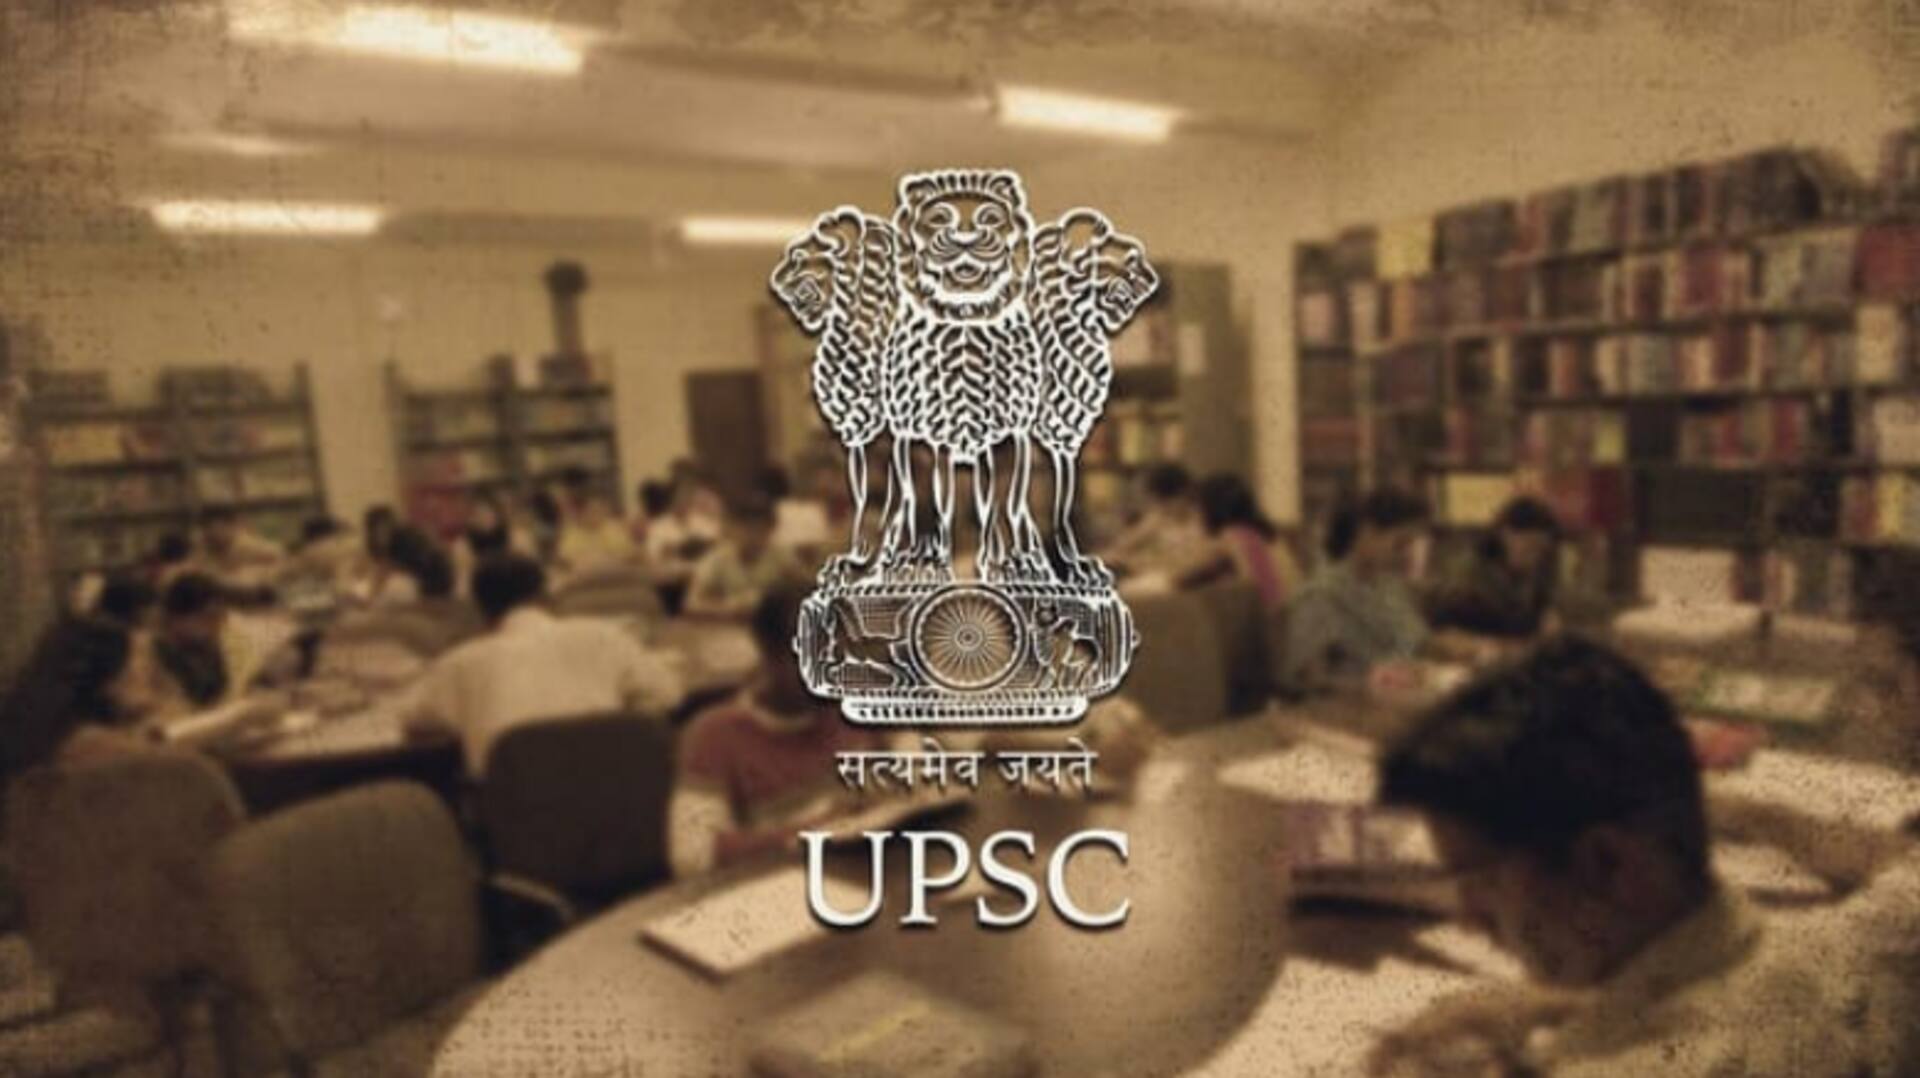 आखिर क्यों की जा रही है UPSC प्रारंभिक परीक्षा रद्द करने की मांग?